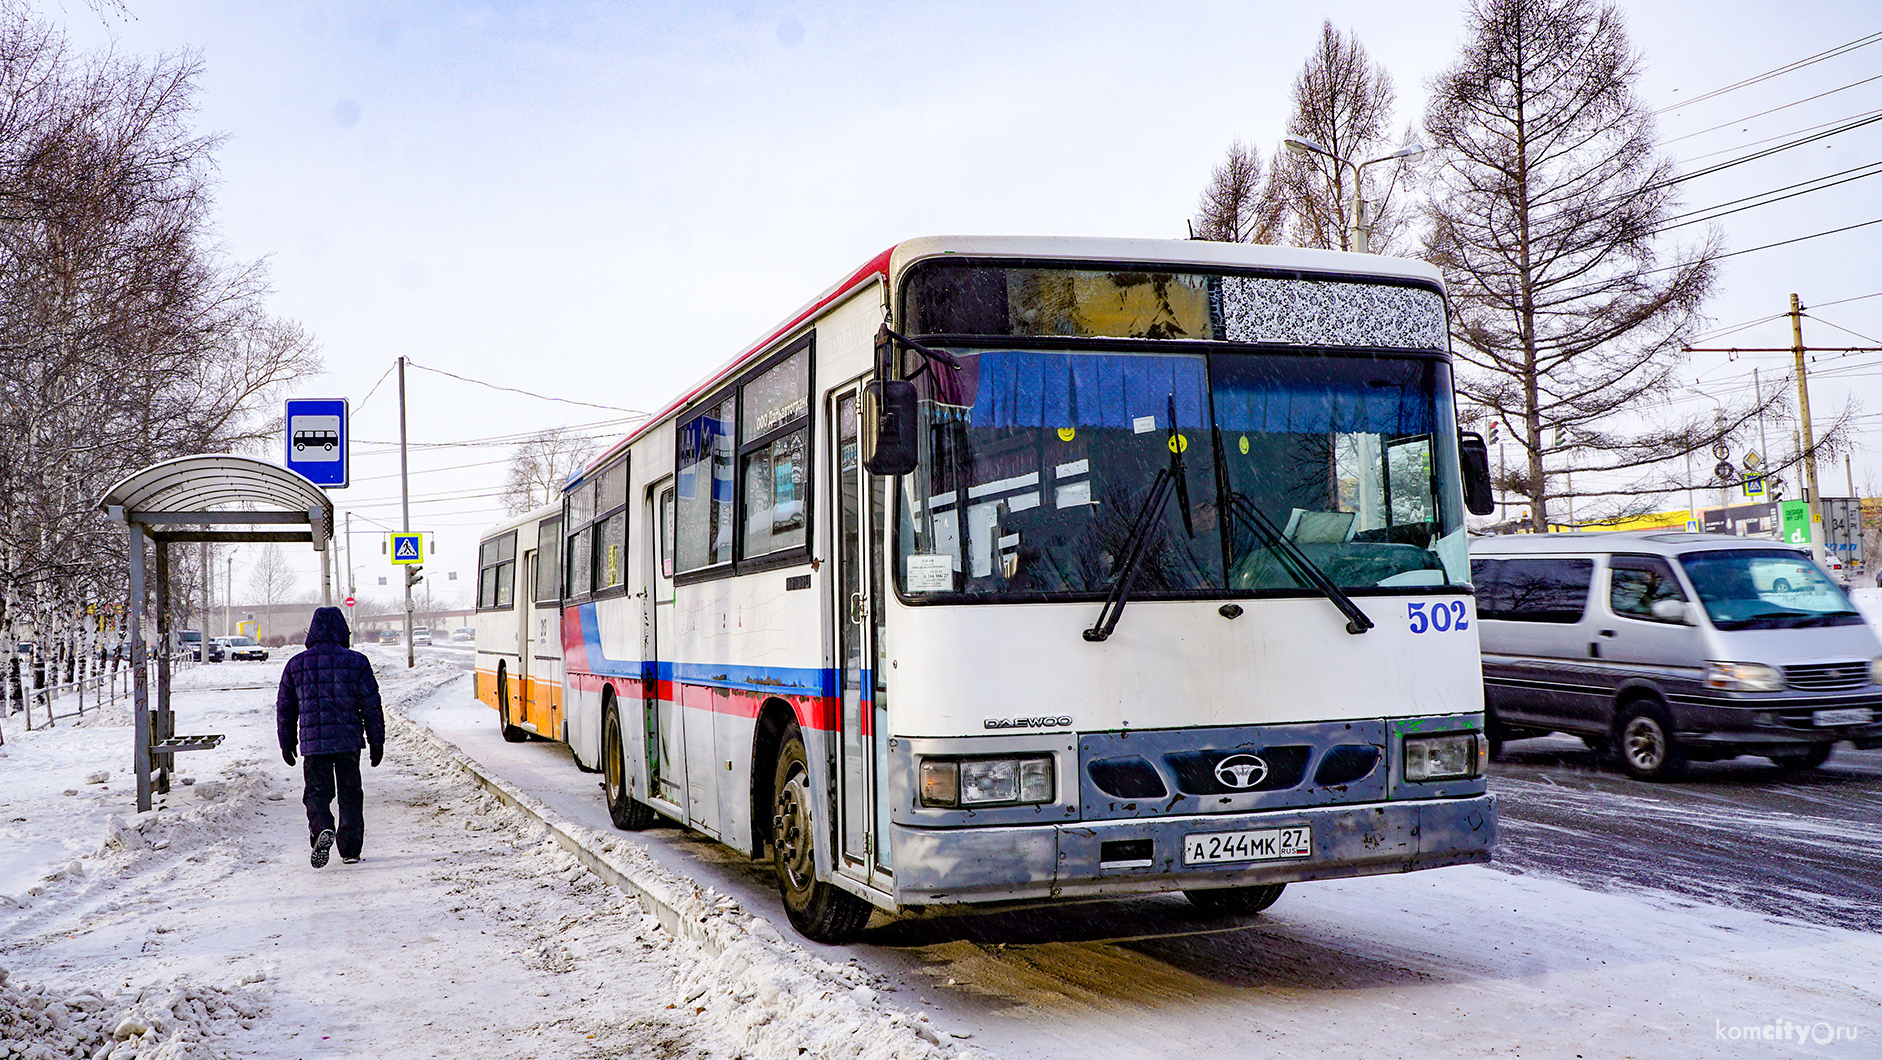 Номера автобусов комсомольск на амуре. Автобусы Комсомольска-на-Амуре. Автобусный парк Комсомольска на Амуре. Автобусы Комсомольск. Хабаровск-Комсомольск-на-Амуре автобус.